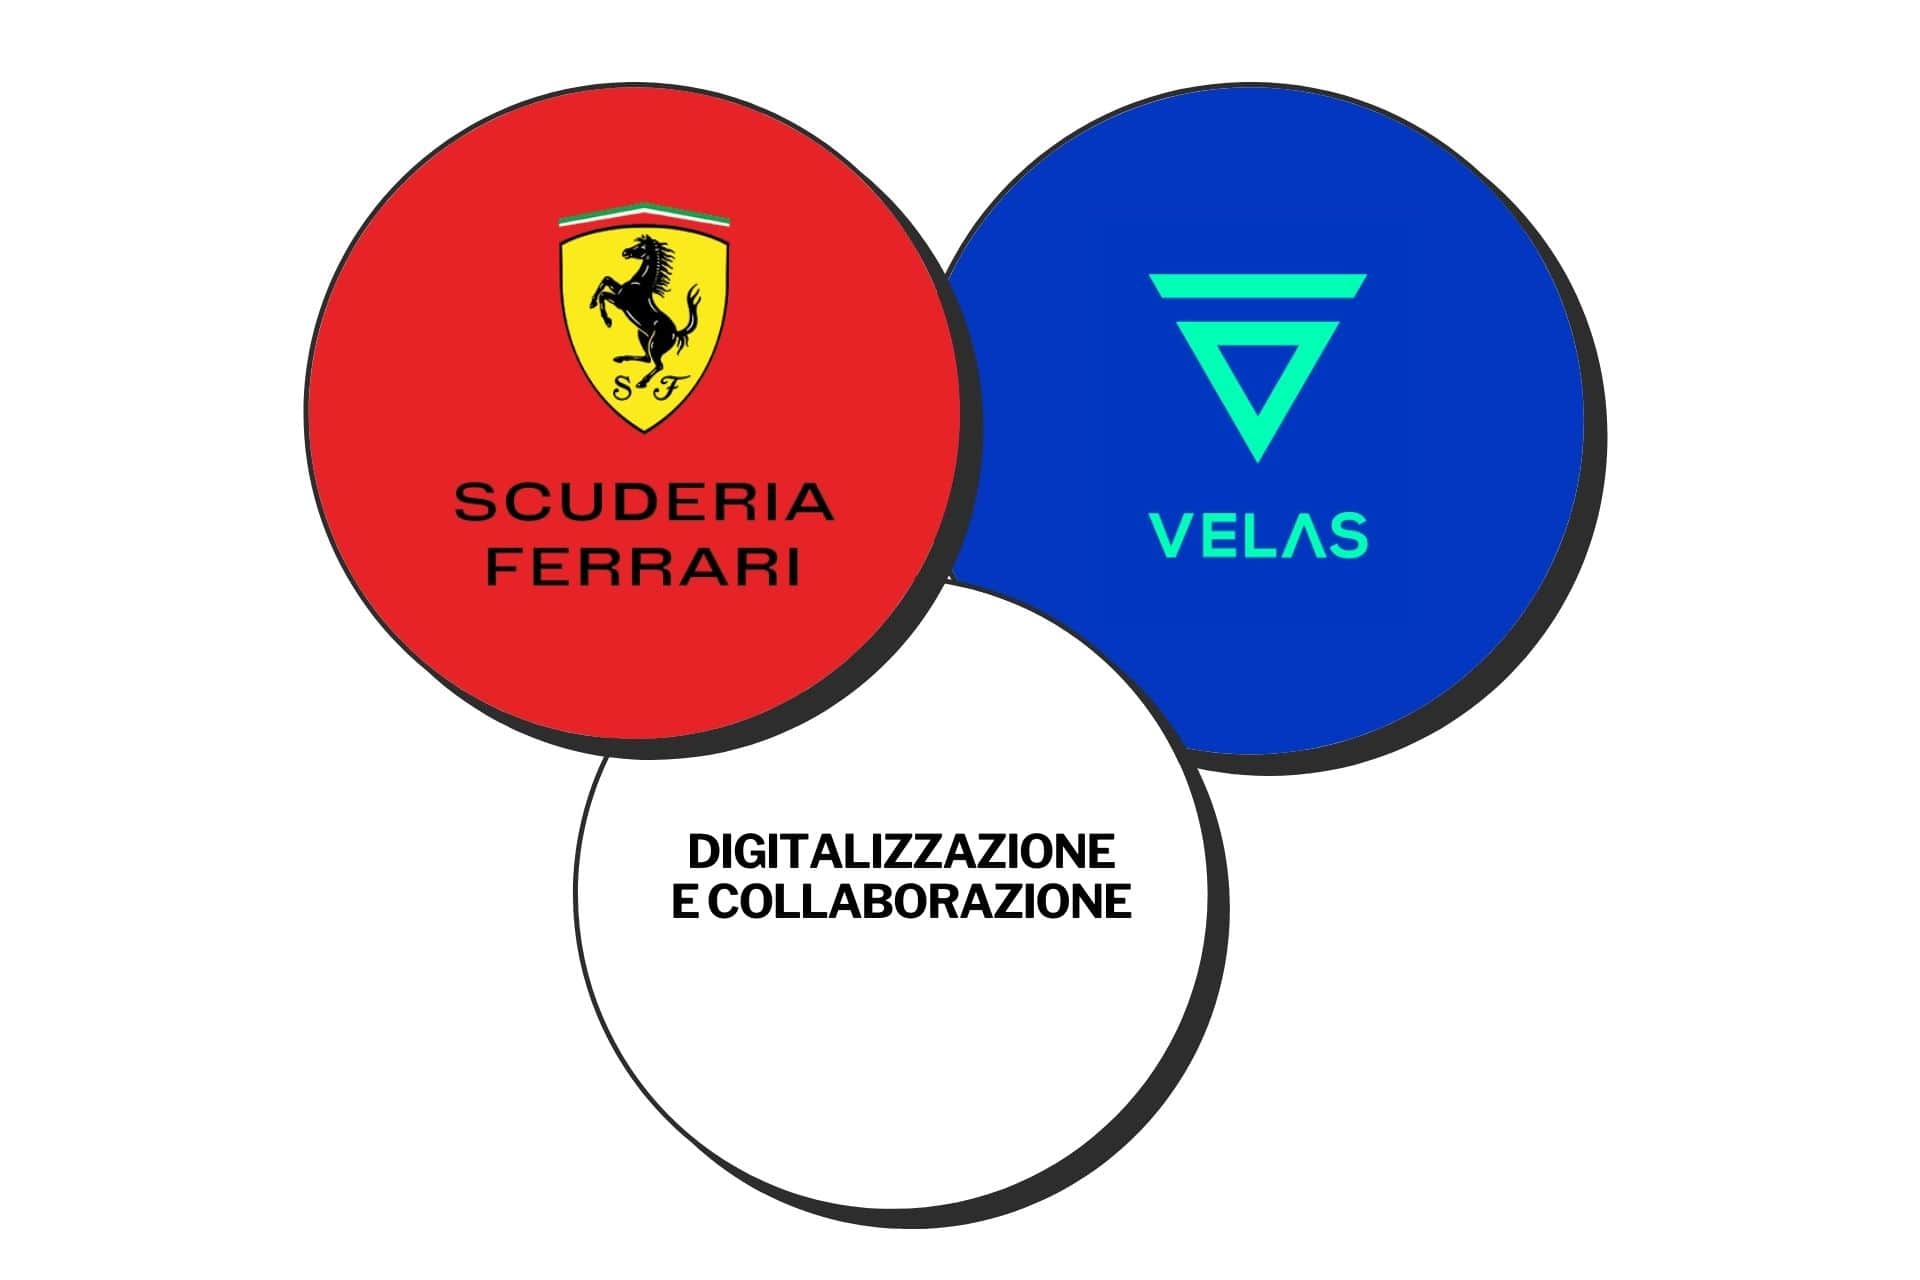 Accordo di collaborazione sui contenuti digitali tra Velas Network AG e Scuderia Ferrari (Grafica: Roberta Ruko)s Network AG